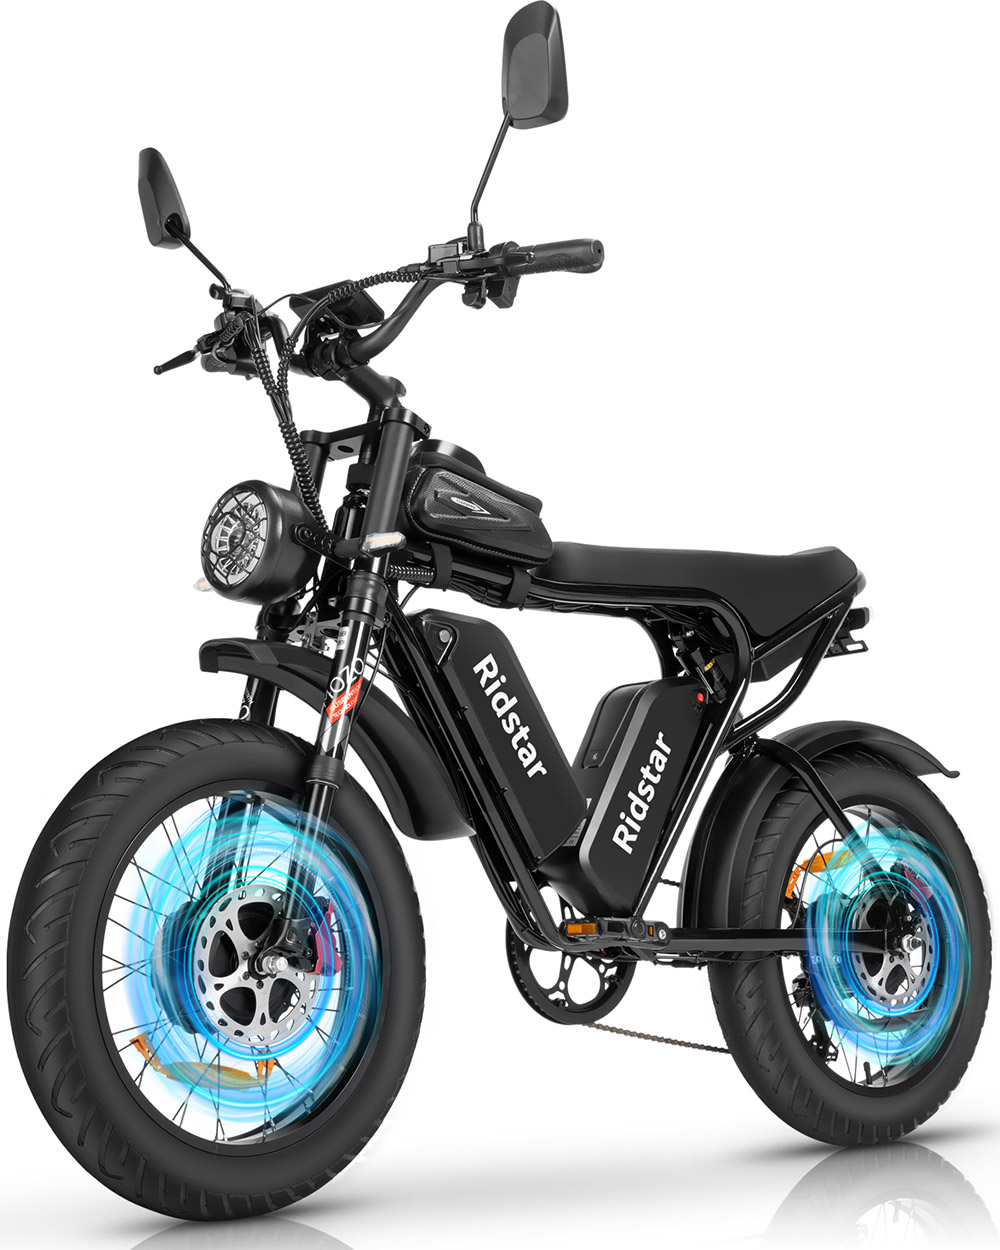 Bicicleta elétrica off-road Ridstar Q20 Pro, pneus grossos de 20 * 4 polegadas, motor 2 * 1000 W, 52 V 20AH, bateria dupla, 34 mph, velocidade máxima, 180 milhas, alcance máximo